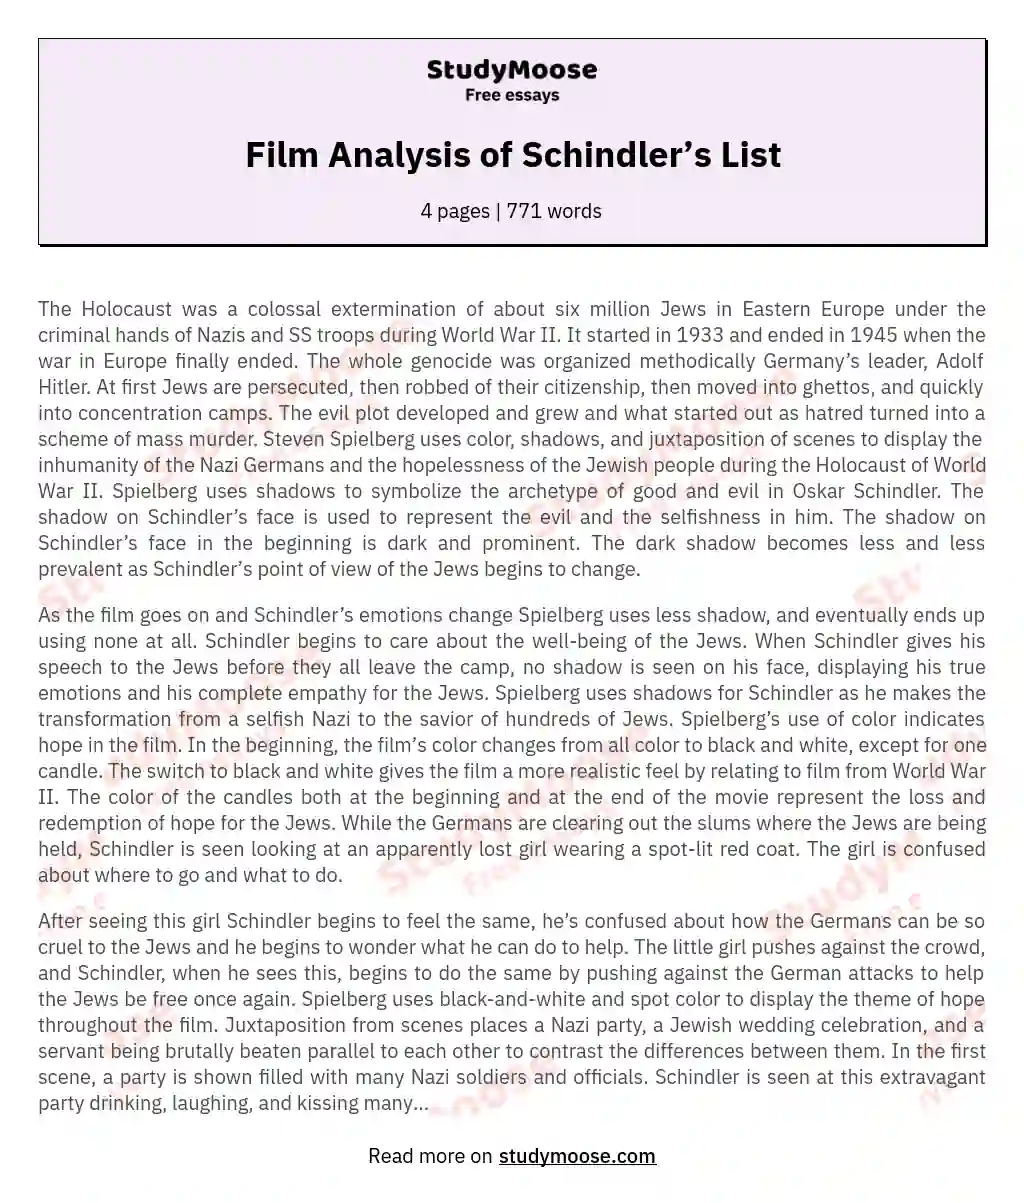 Film Analysis of Schindler’s List essay